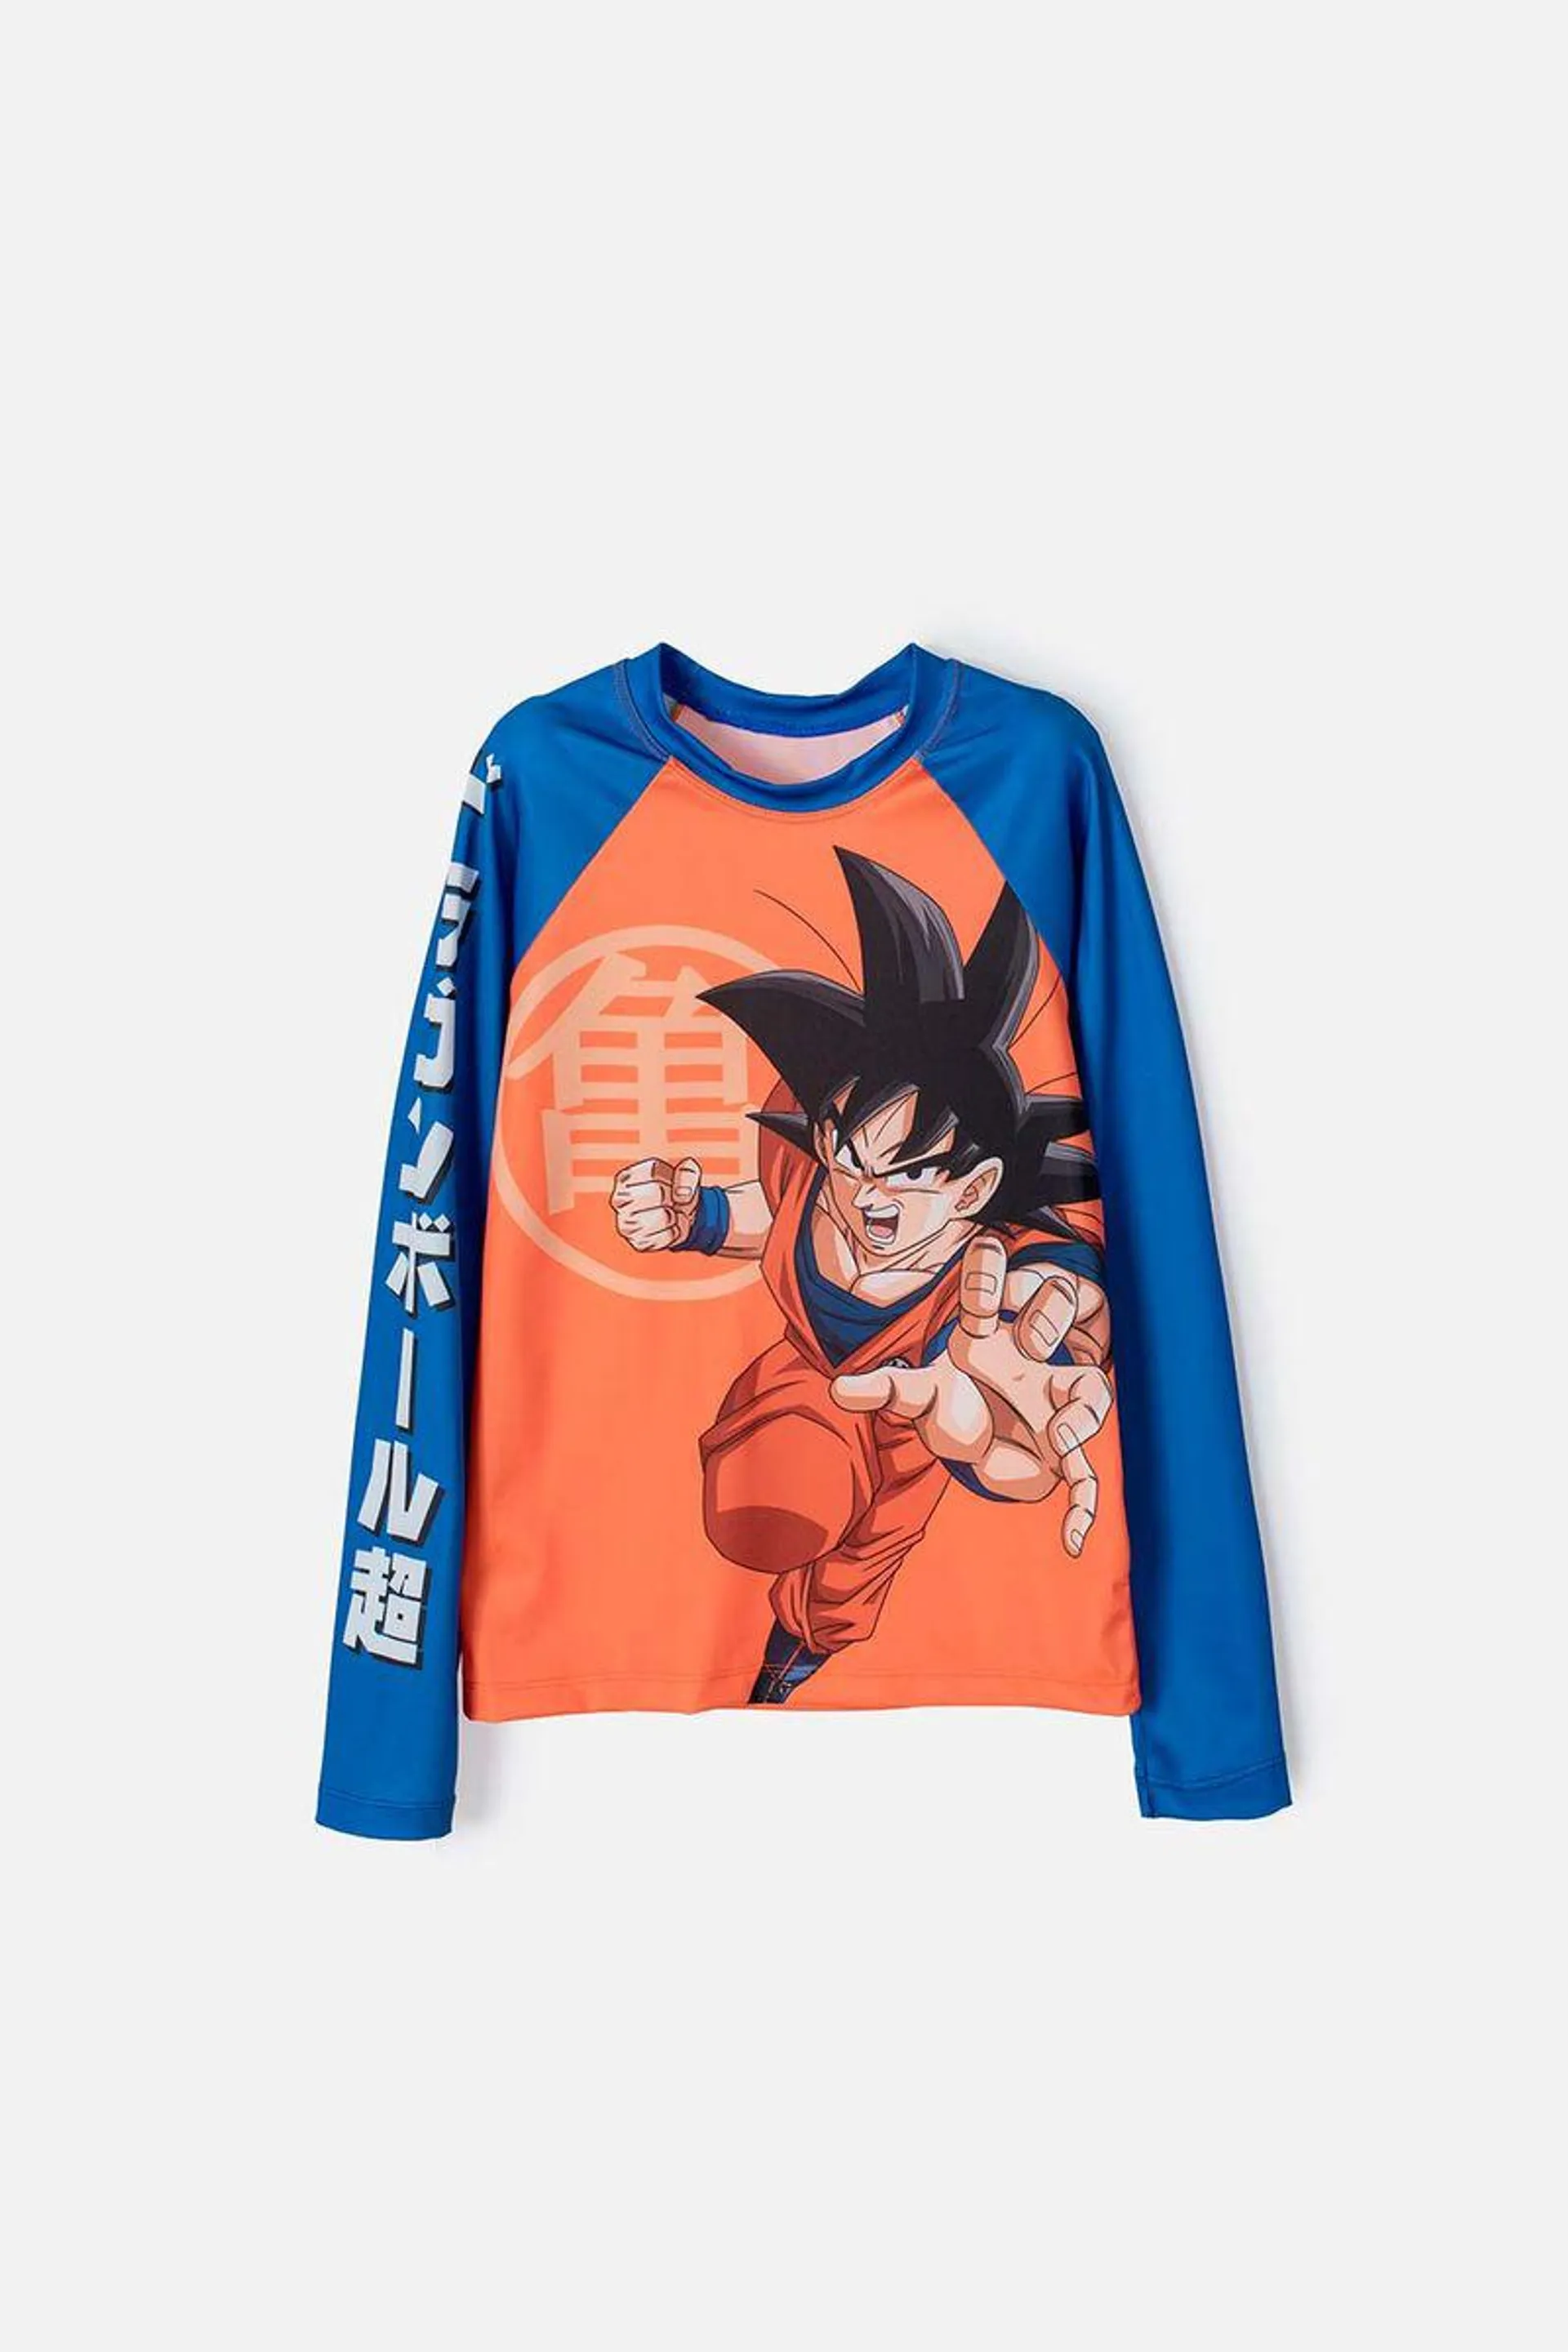 Camiseta de baño para niño, manga larga naranja/azul de Dragon Ball